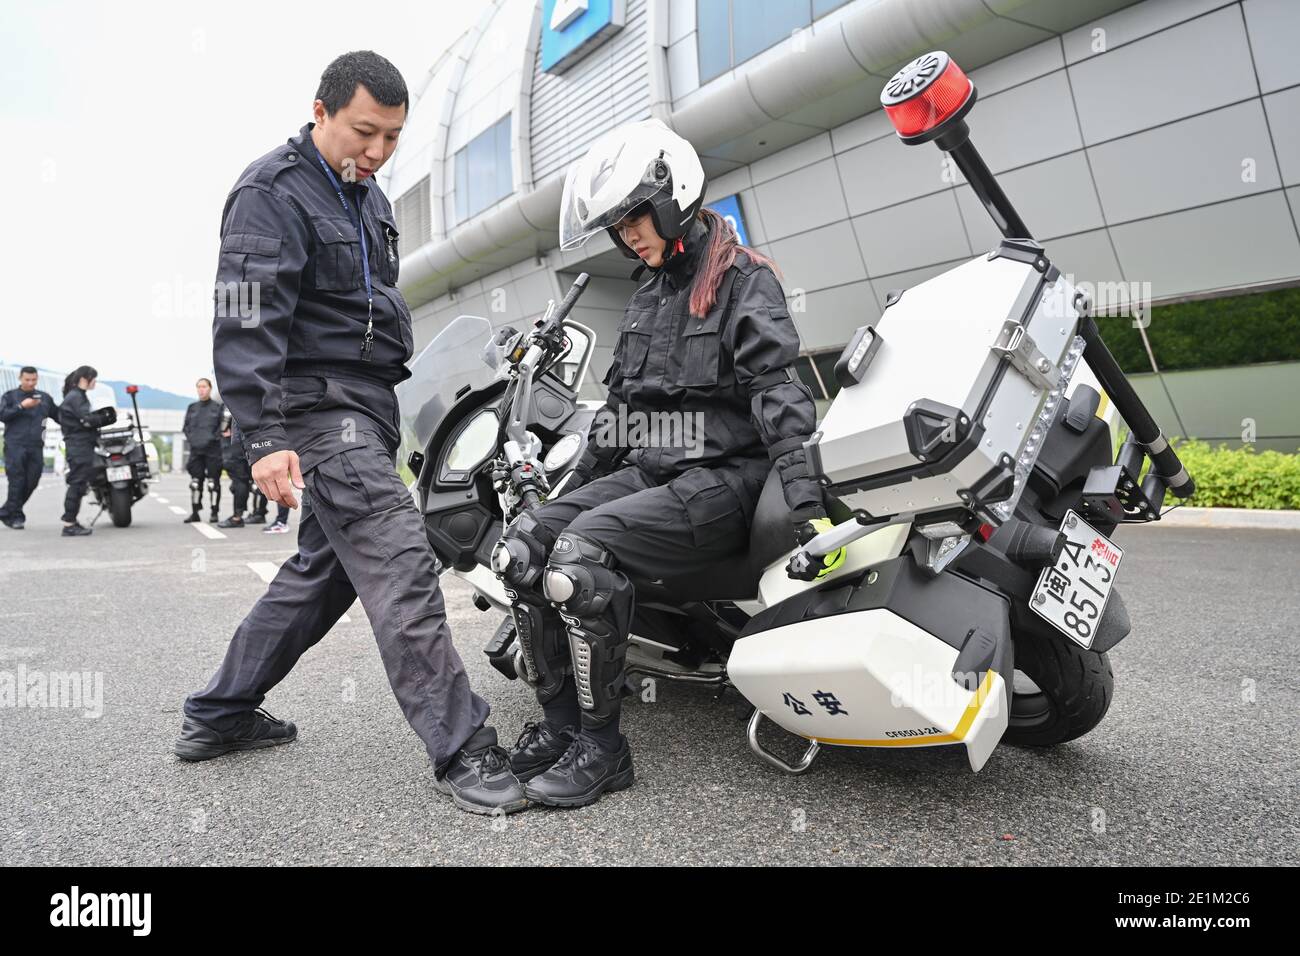 (210108) -- FUZHOU, 8. Januar 2021 (Xinhua) -- Cai Jingye, ein Mitglied eines Motorradteams für Verkehrspolizisten, versucht während eines Fahrtrainings in der Stadt Fuzhou, südöstlich der Provinz Fujian in China, am 15. Dezember 2020, ein gefallenes Motorrad anzuheben. Das erste Verkehrspolizisten-Motorradteam der Stadt wurde Tage vor dem bevorstehenden ersten chinesischen Polizeitag, der am 10. Januar 2021 angesetzt wird, gegründet. Mit einer durchschnittlichen Höhe von bis zu 1.7 Metern sind diese Motorradfahrerinnen in schönen Uniformen gut ausgebildet, um das etwa 300 kg schwere Polizeimotorrad fahren zu können, um Dienst zu leisten, ohne dabei die Aufmerksamkeit zu erregen Stockfoto